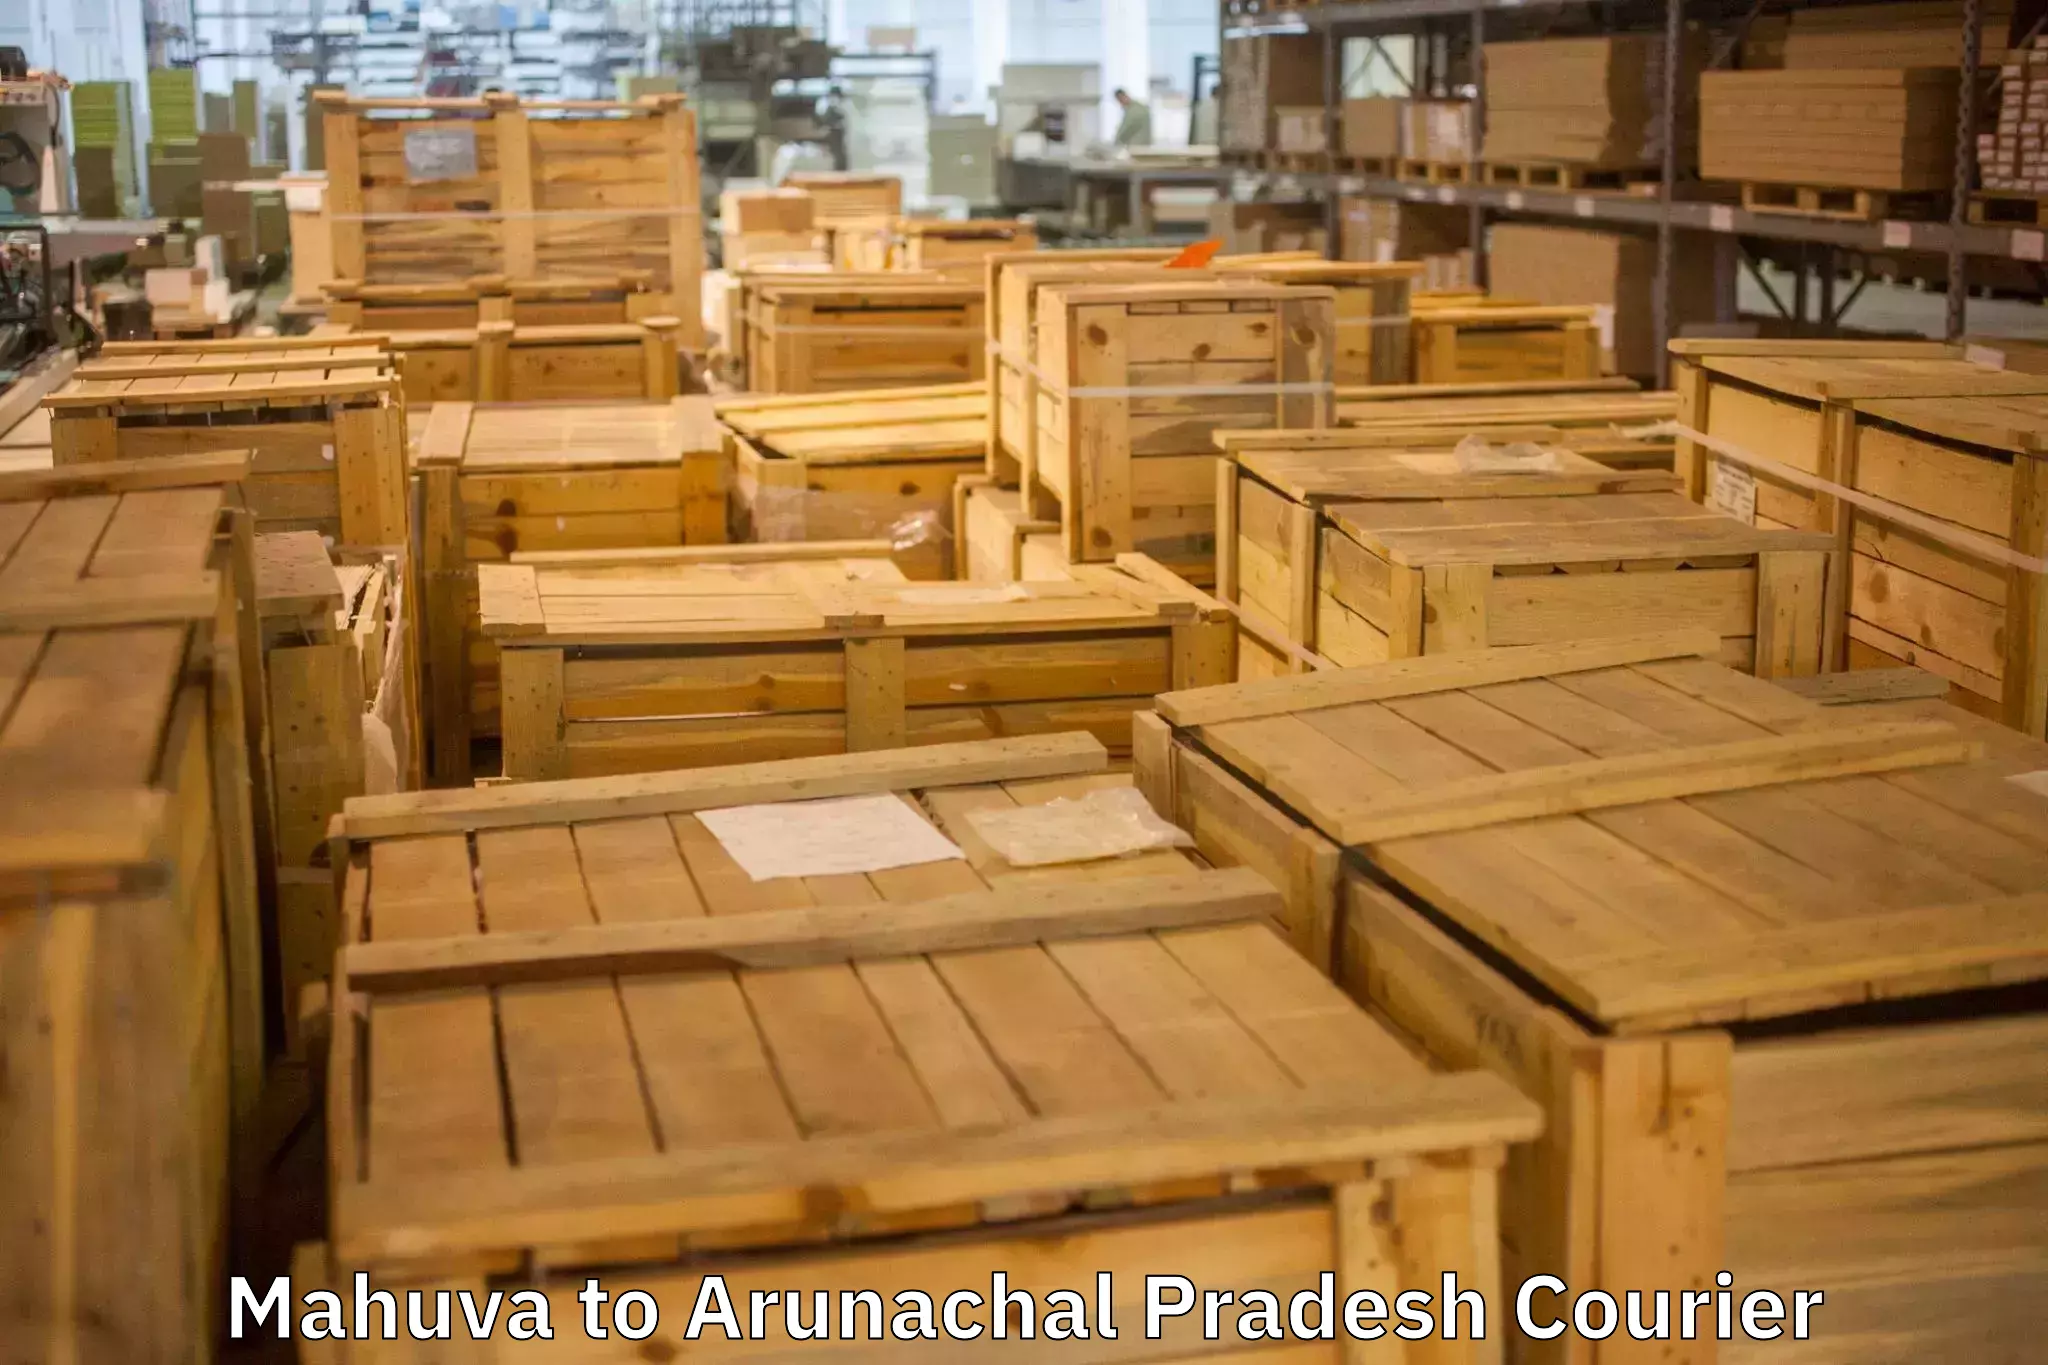 Safe household movers in Mahuva to Arunachal Pradesh